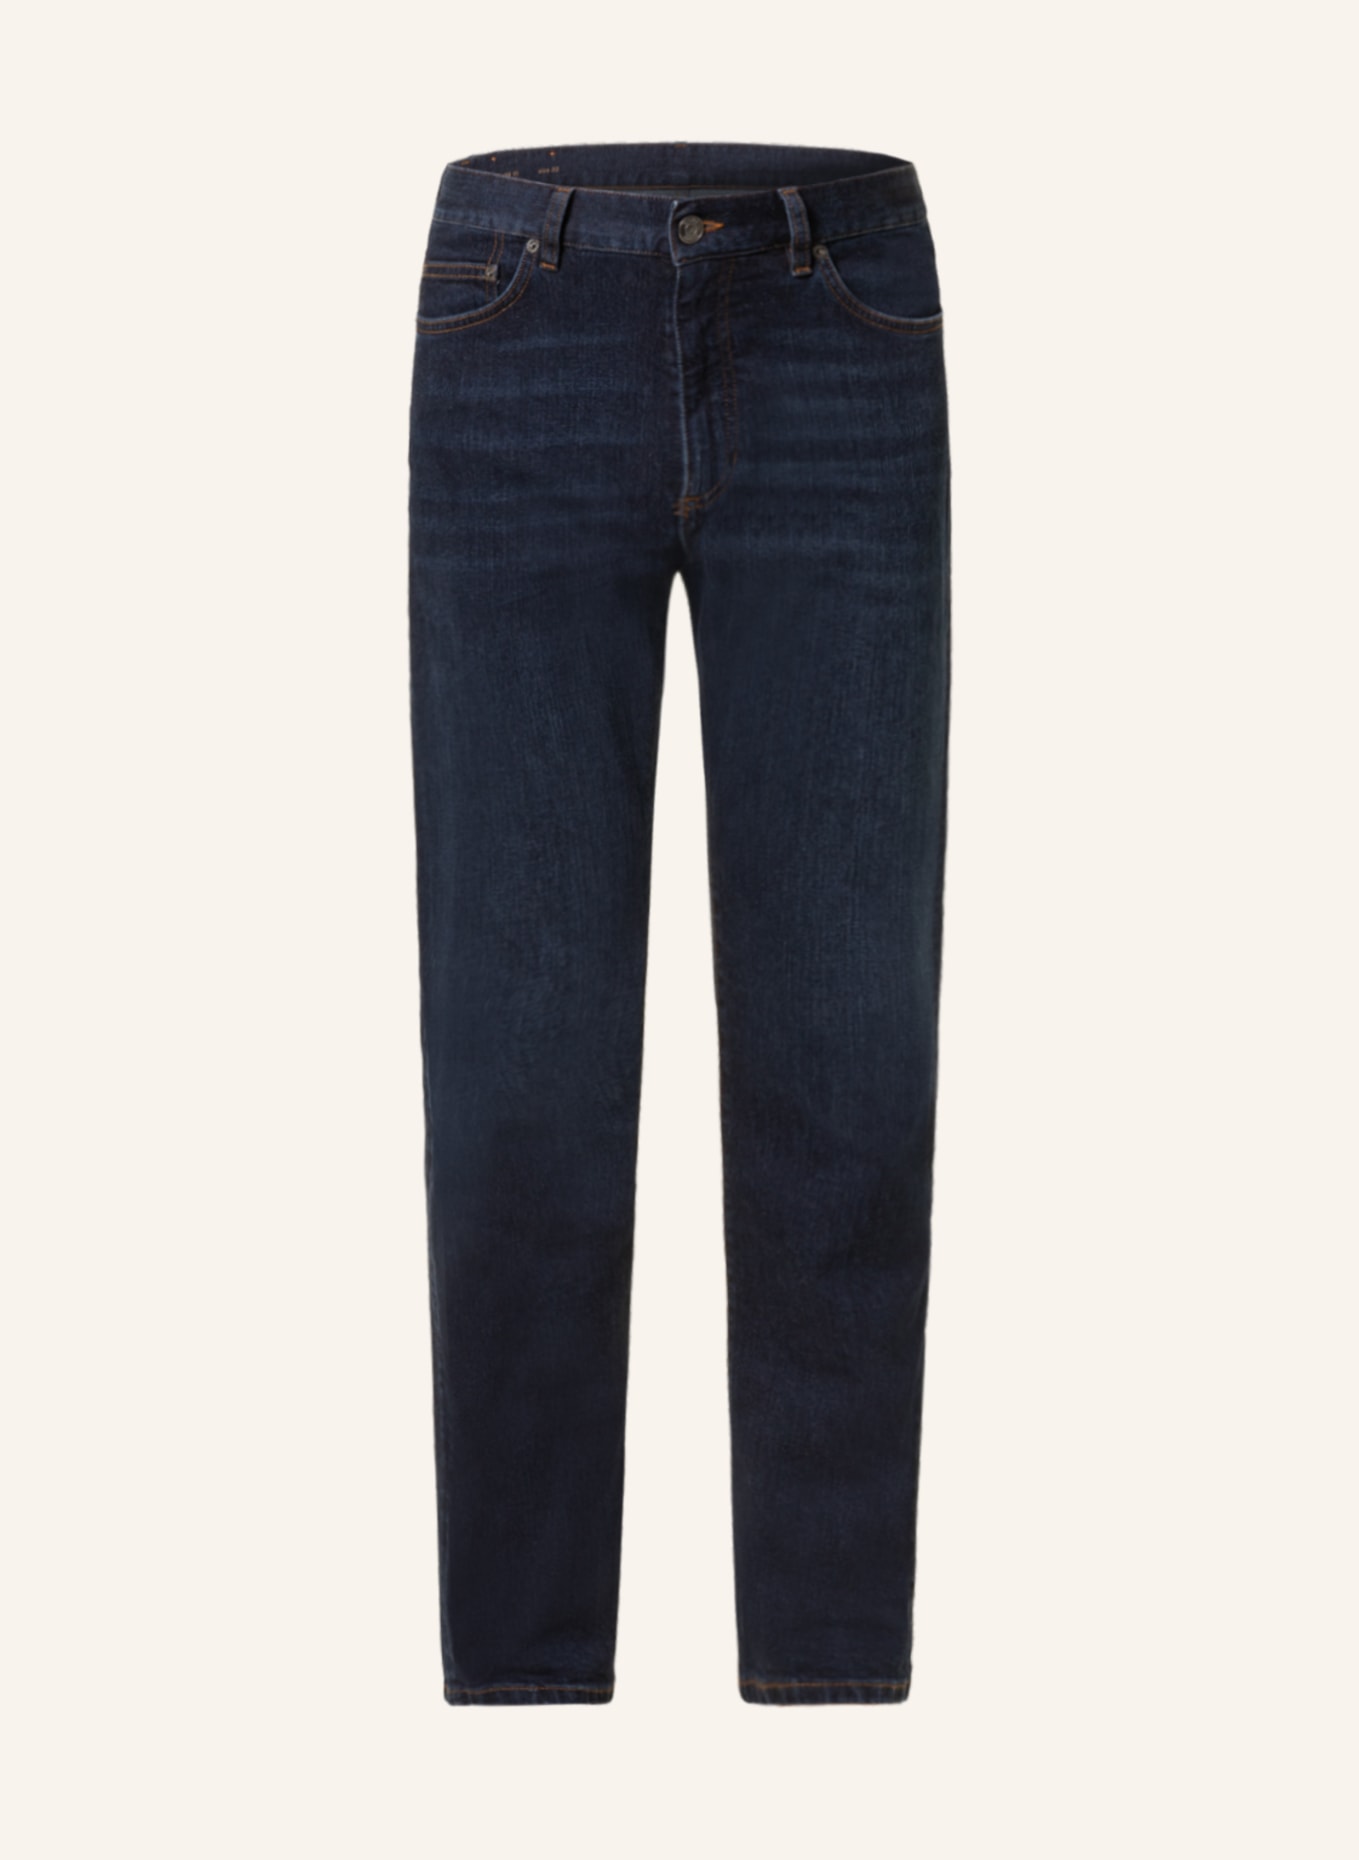 ZEGNA Jeans comfort fit, Color: 001 DARK BLUE (Image 1)